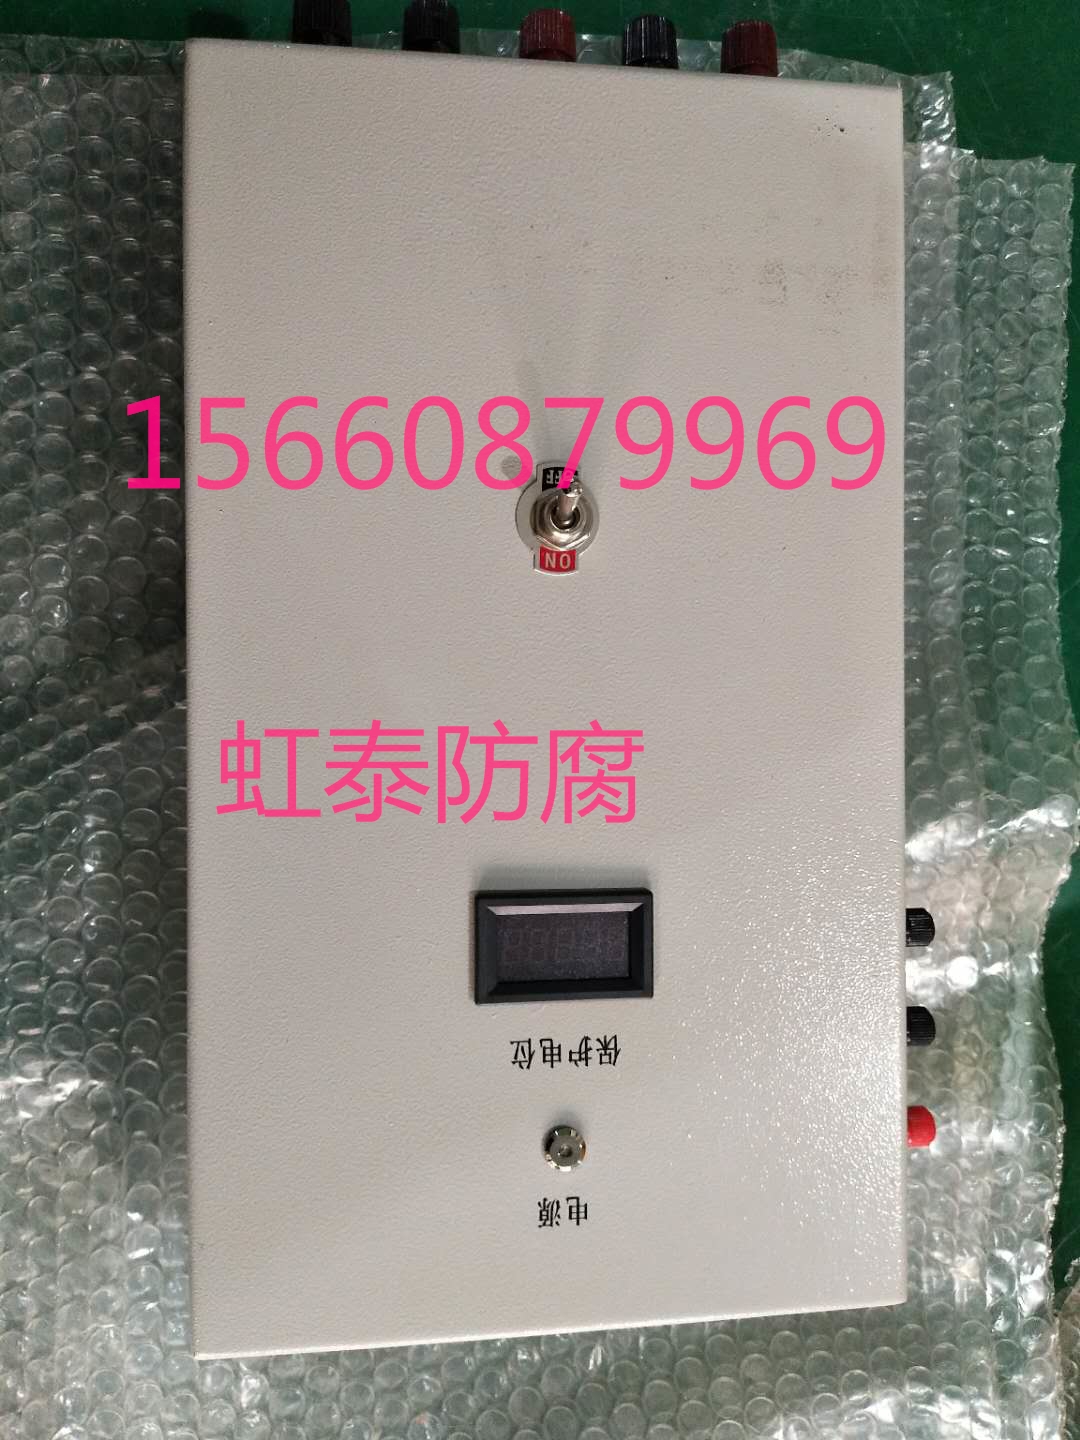 虹泰防腐供应阴极保护 4-20MA电位传送器  欢迎咨询